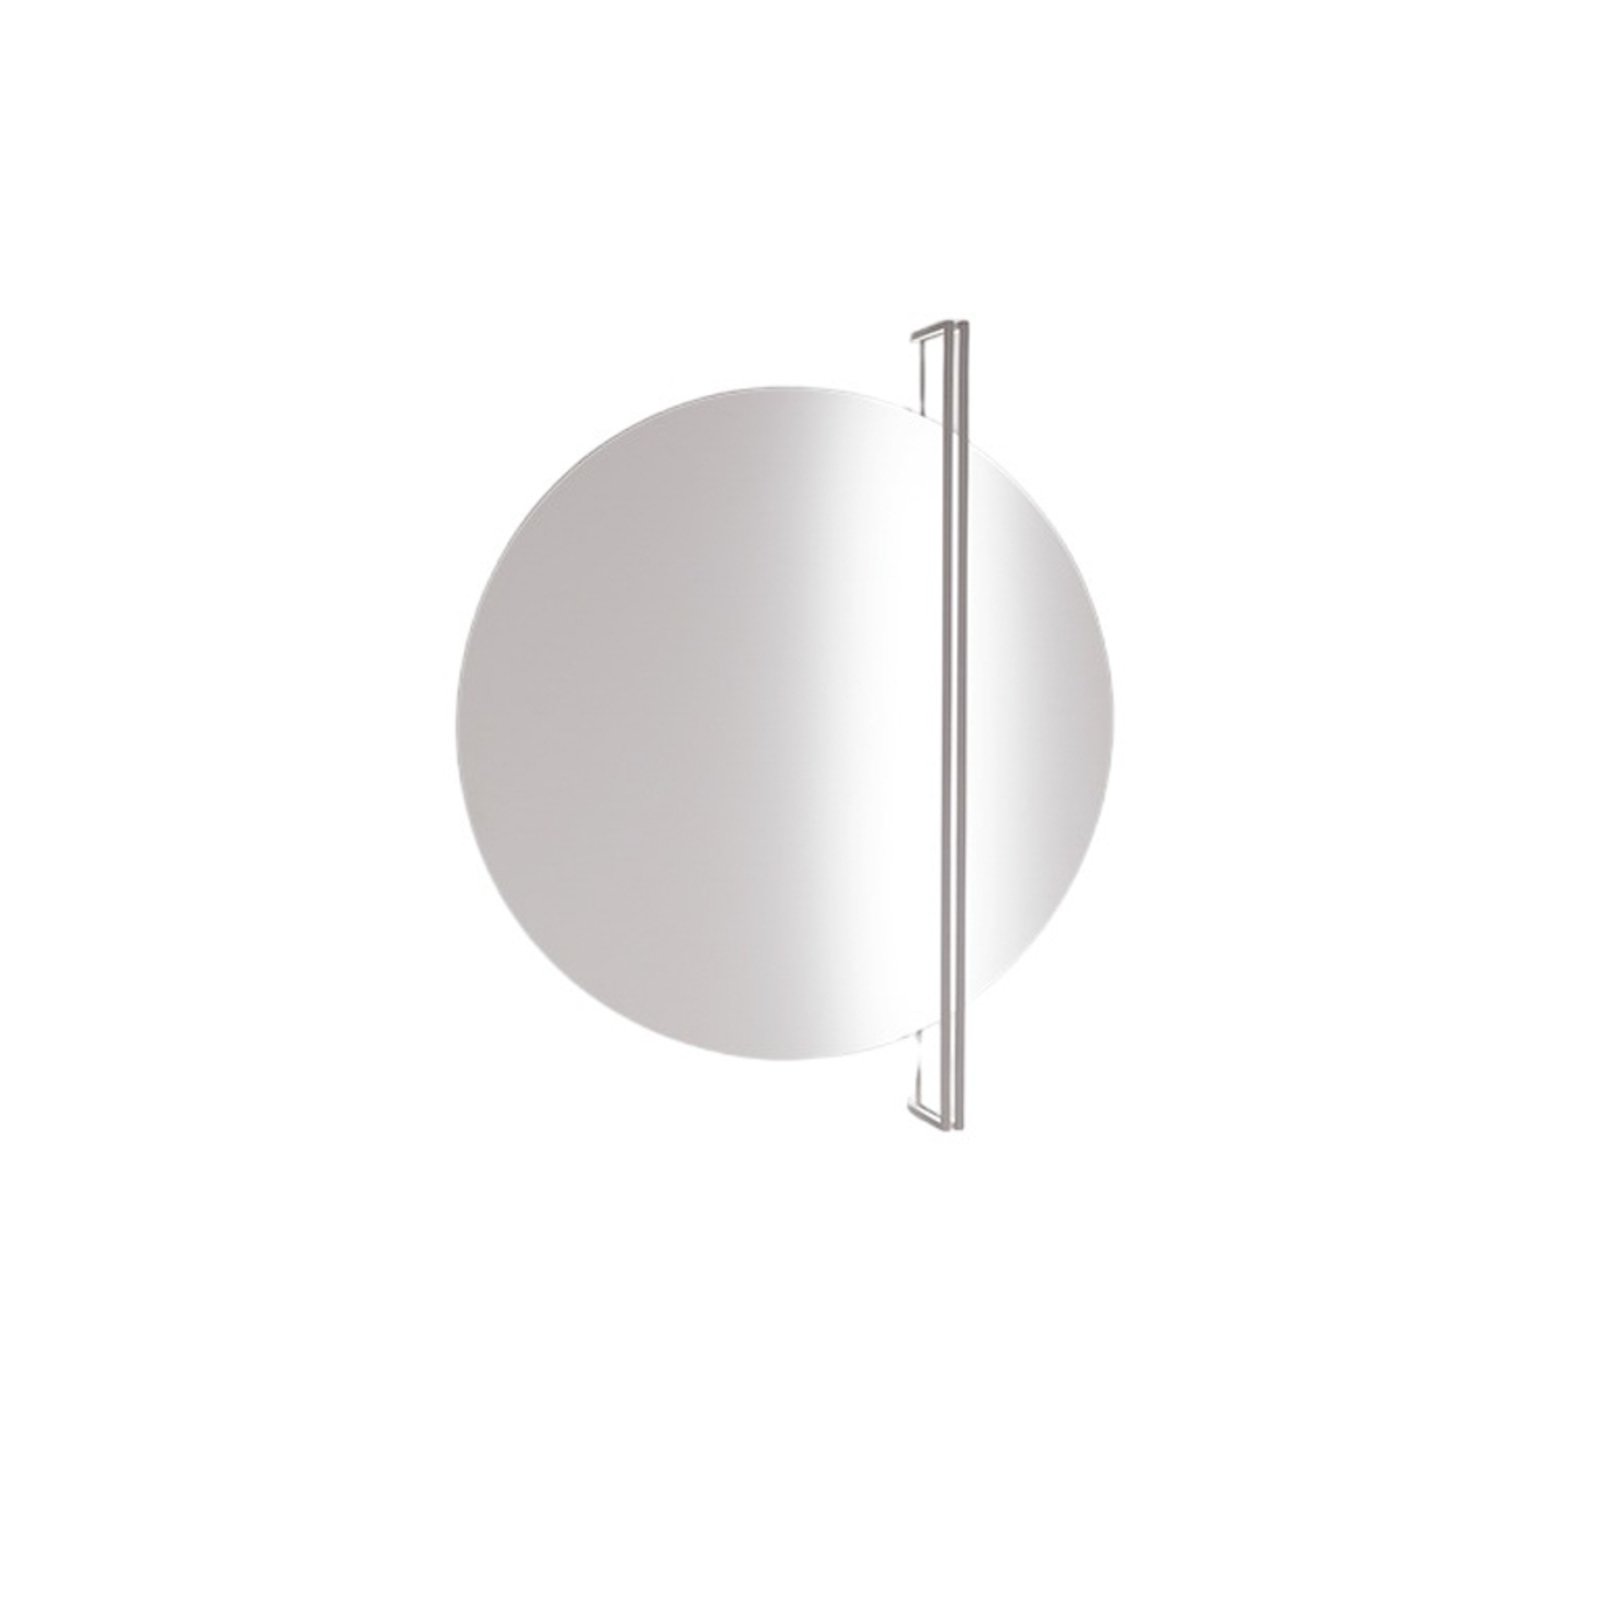 ICONE Essenza lampa sufitowa 927 Ø70cm biała/biała